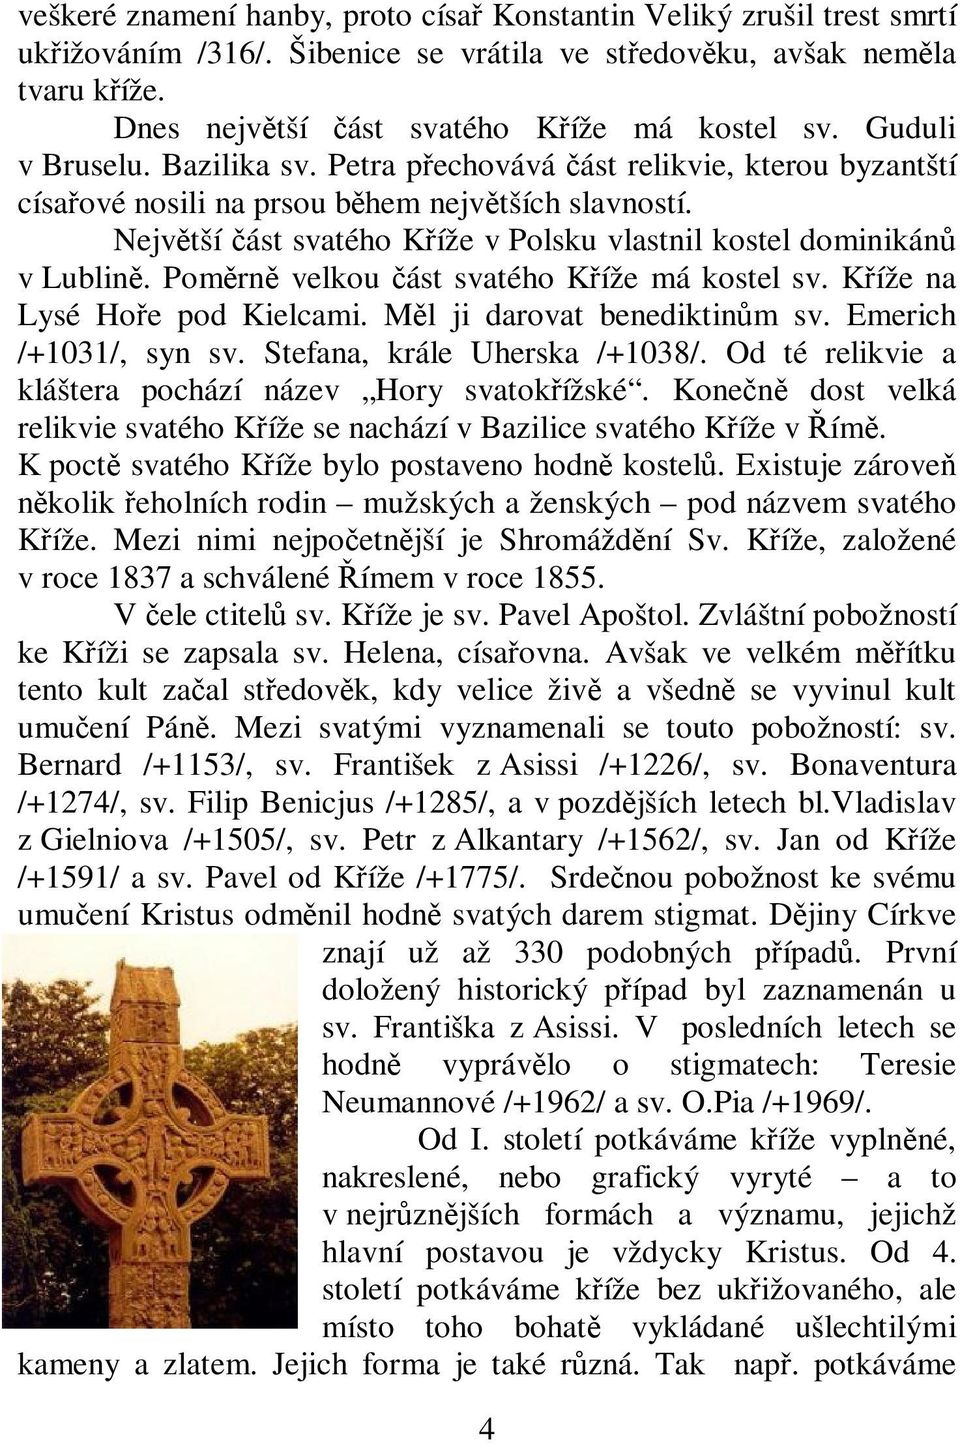 Pomrn velkou ást svatého Kíže má kostel sv. Kíže na Lysé Hoe pod Kielcami. Ml ji darovat benediktinm sv. Emerich /+1031/, syn sv. Stefana, krále Uherska /+1038/.